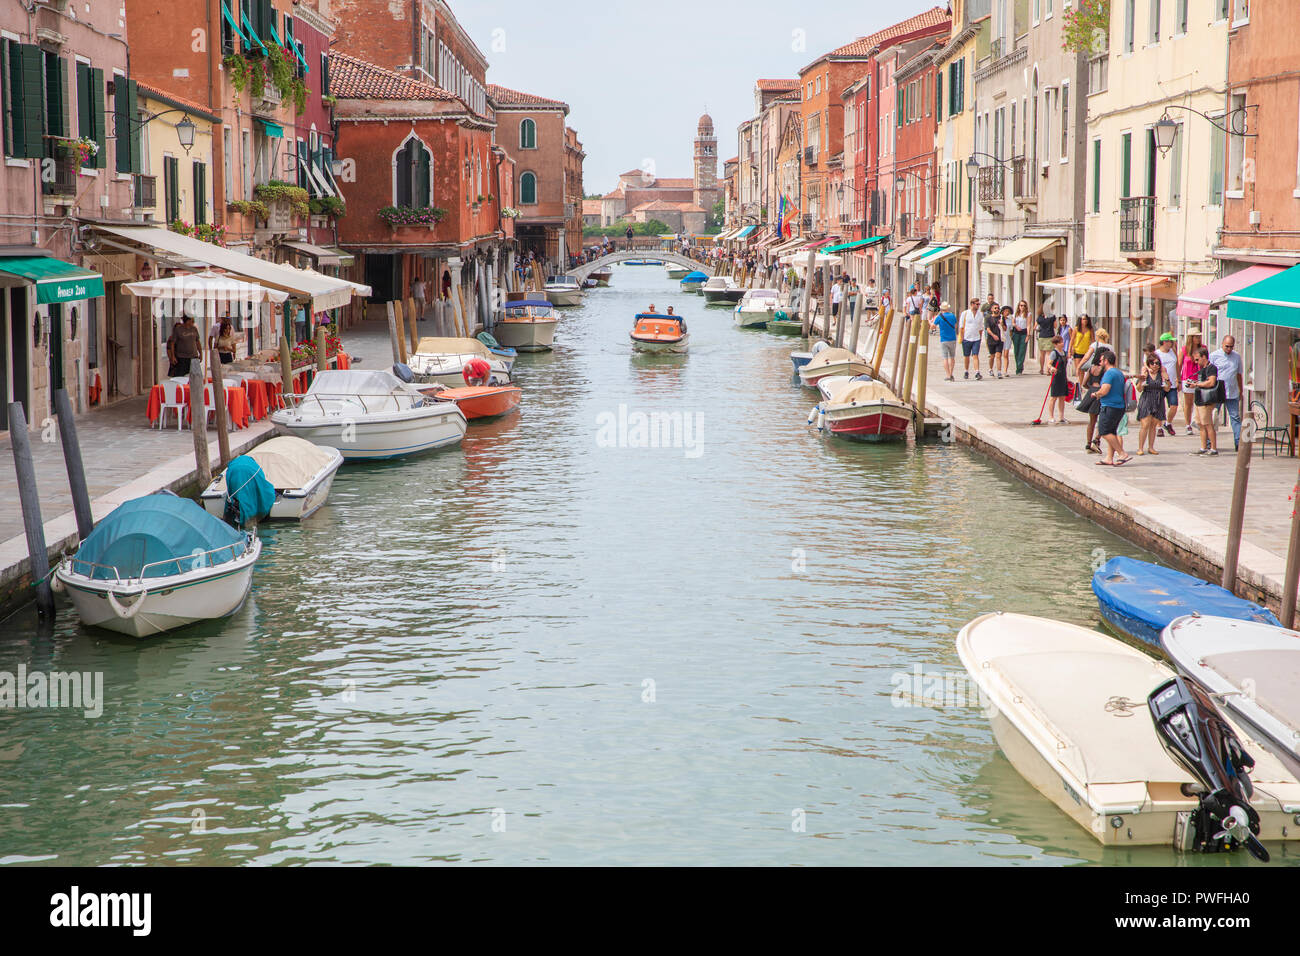 Fondamenta dei Vetrai, une des rues principales sur l'île de Murano, Venise, Italie. Banque D'Images